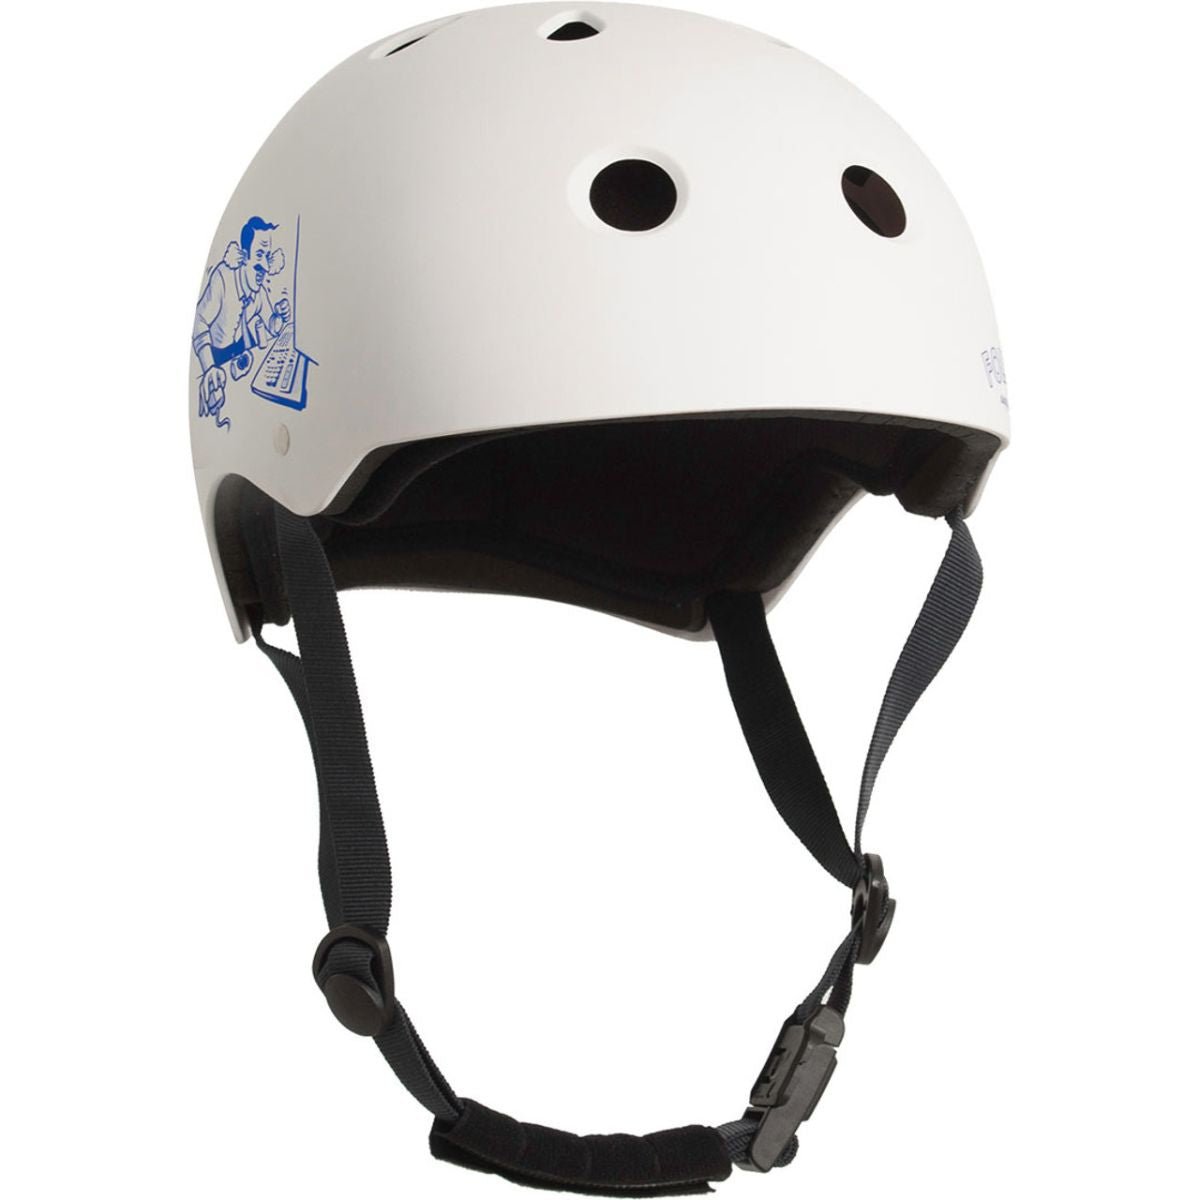 Follow Pro Helmet in White - BoardCo